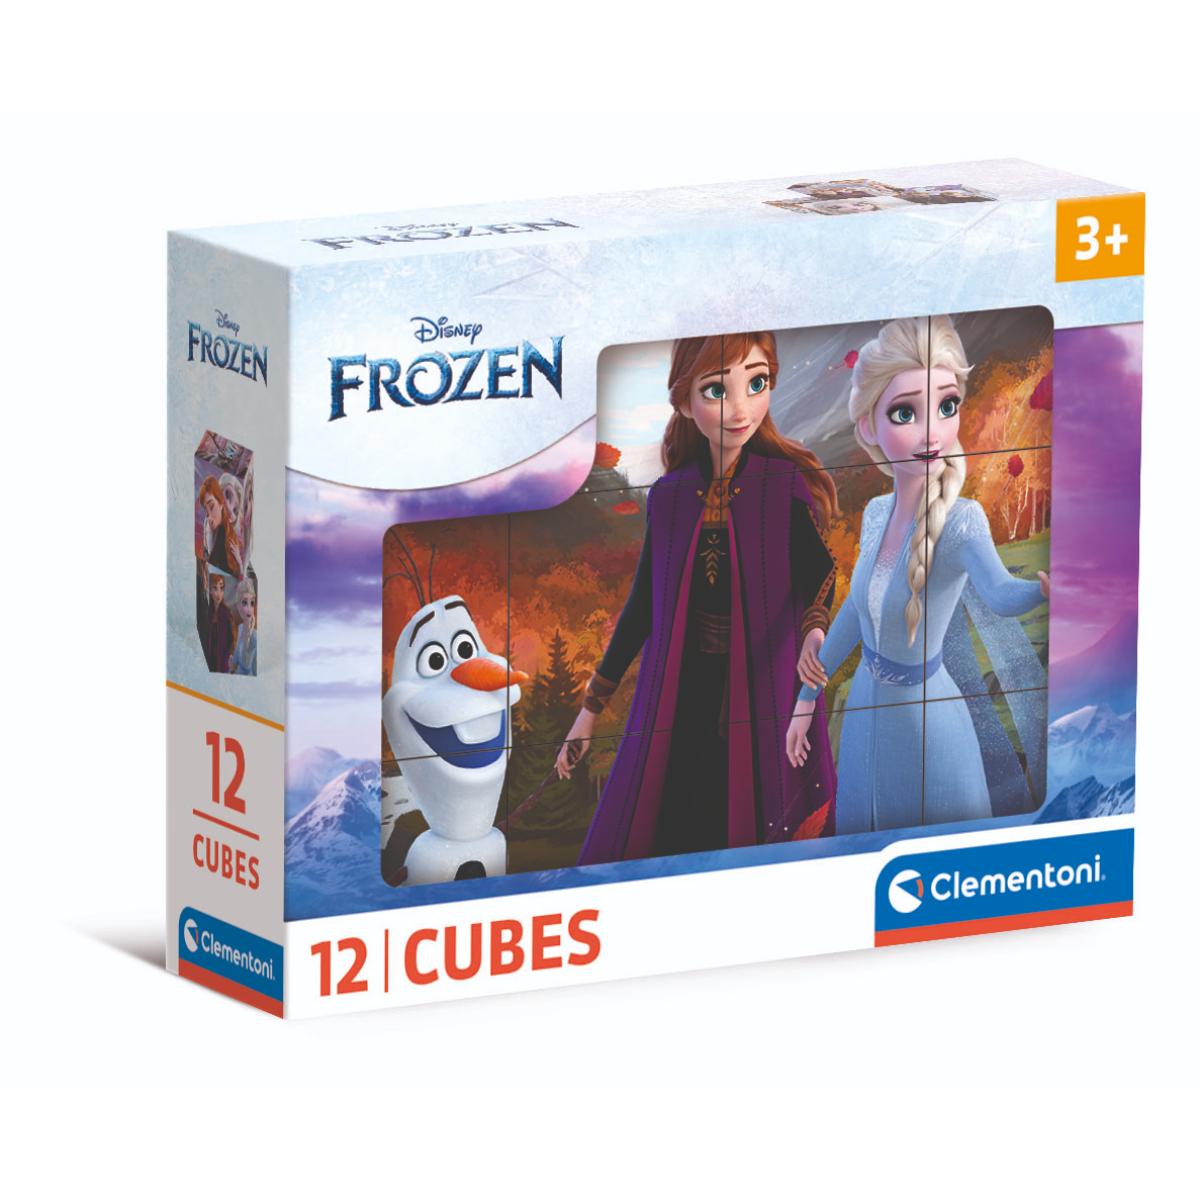 Puzzle Clementoni, Disney Frozen, 12 cuburi